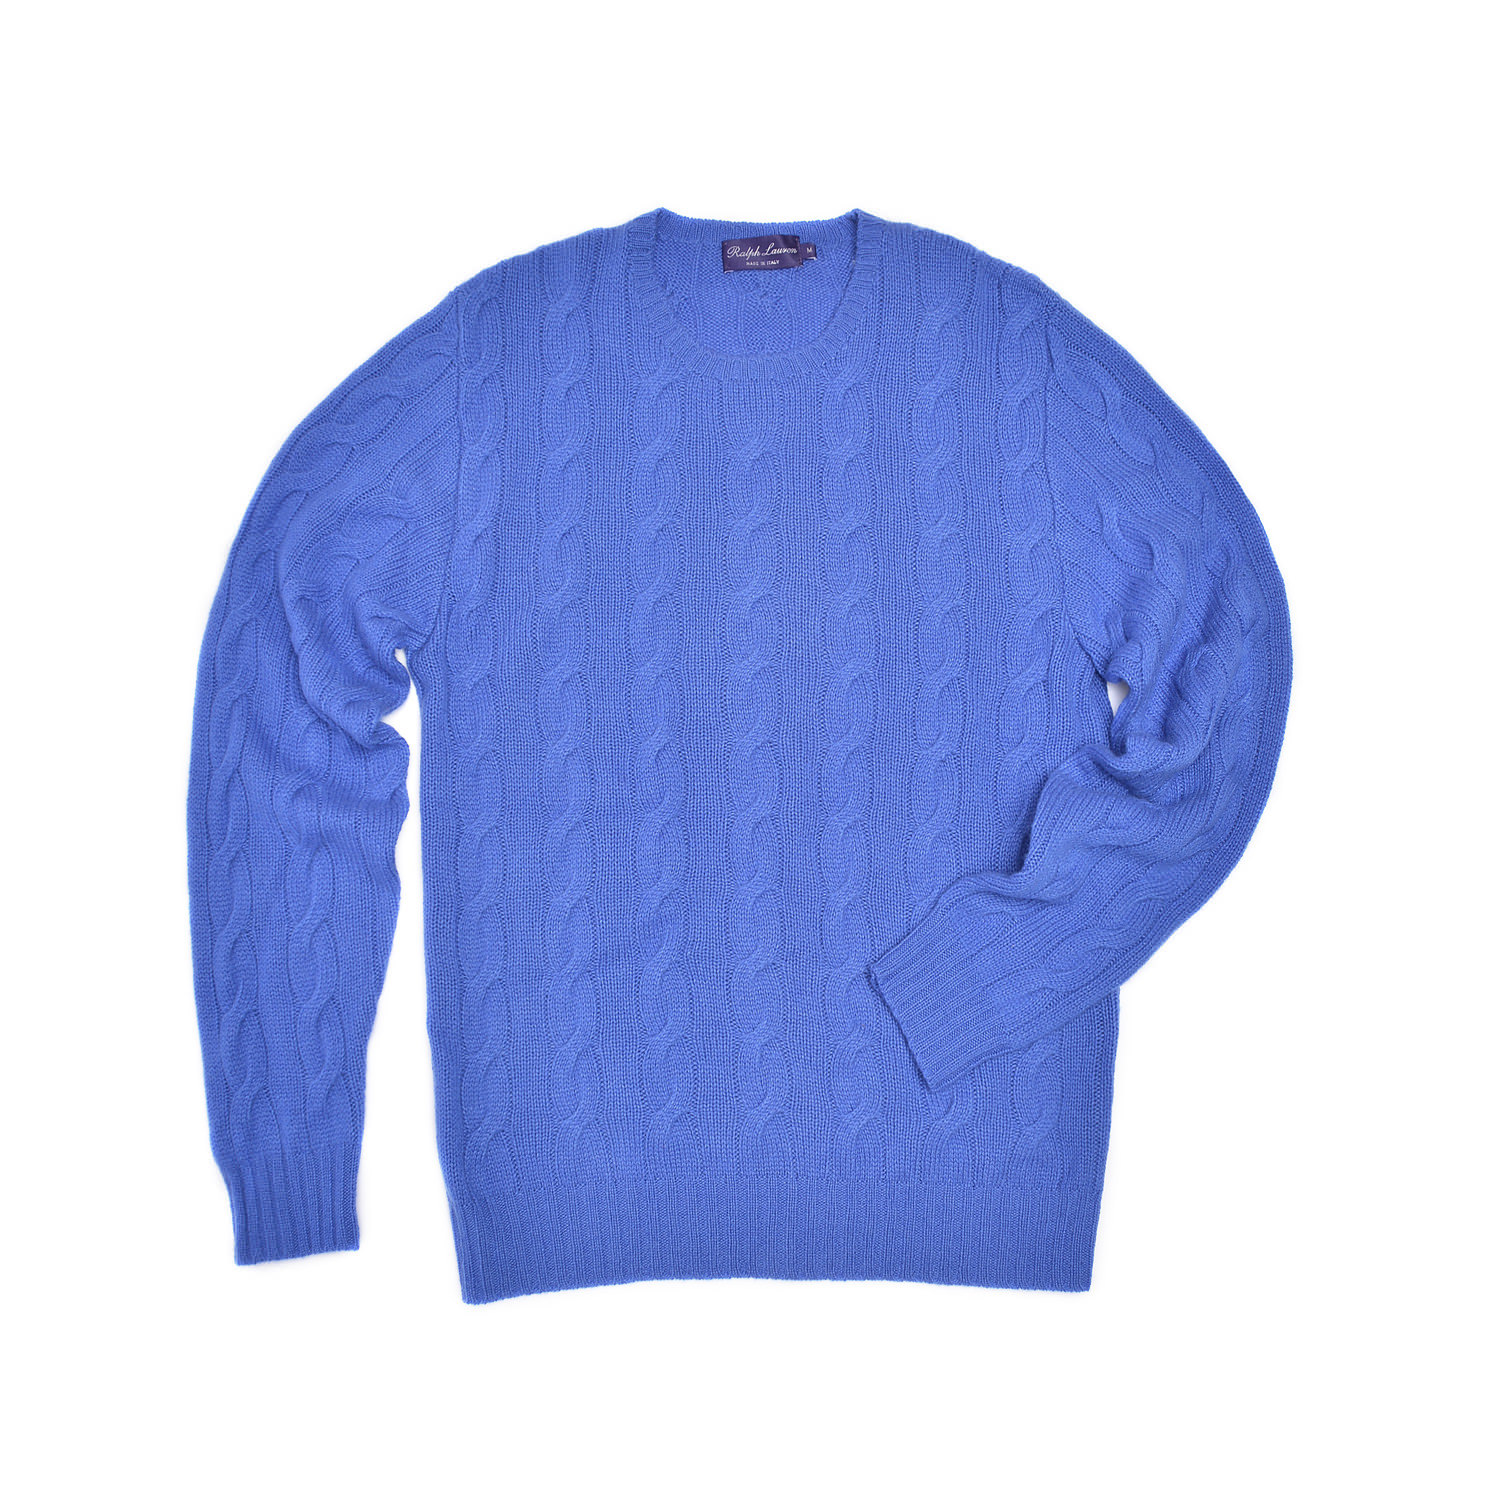 ralph lauren purple label cable knit cashmere sweater